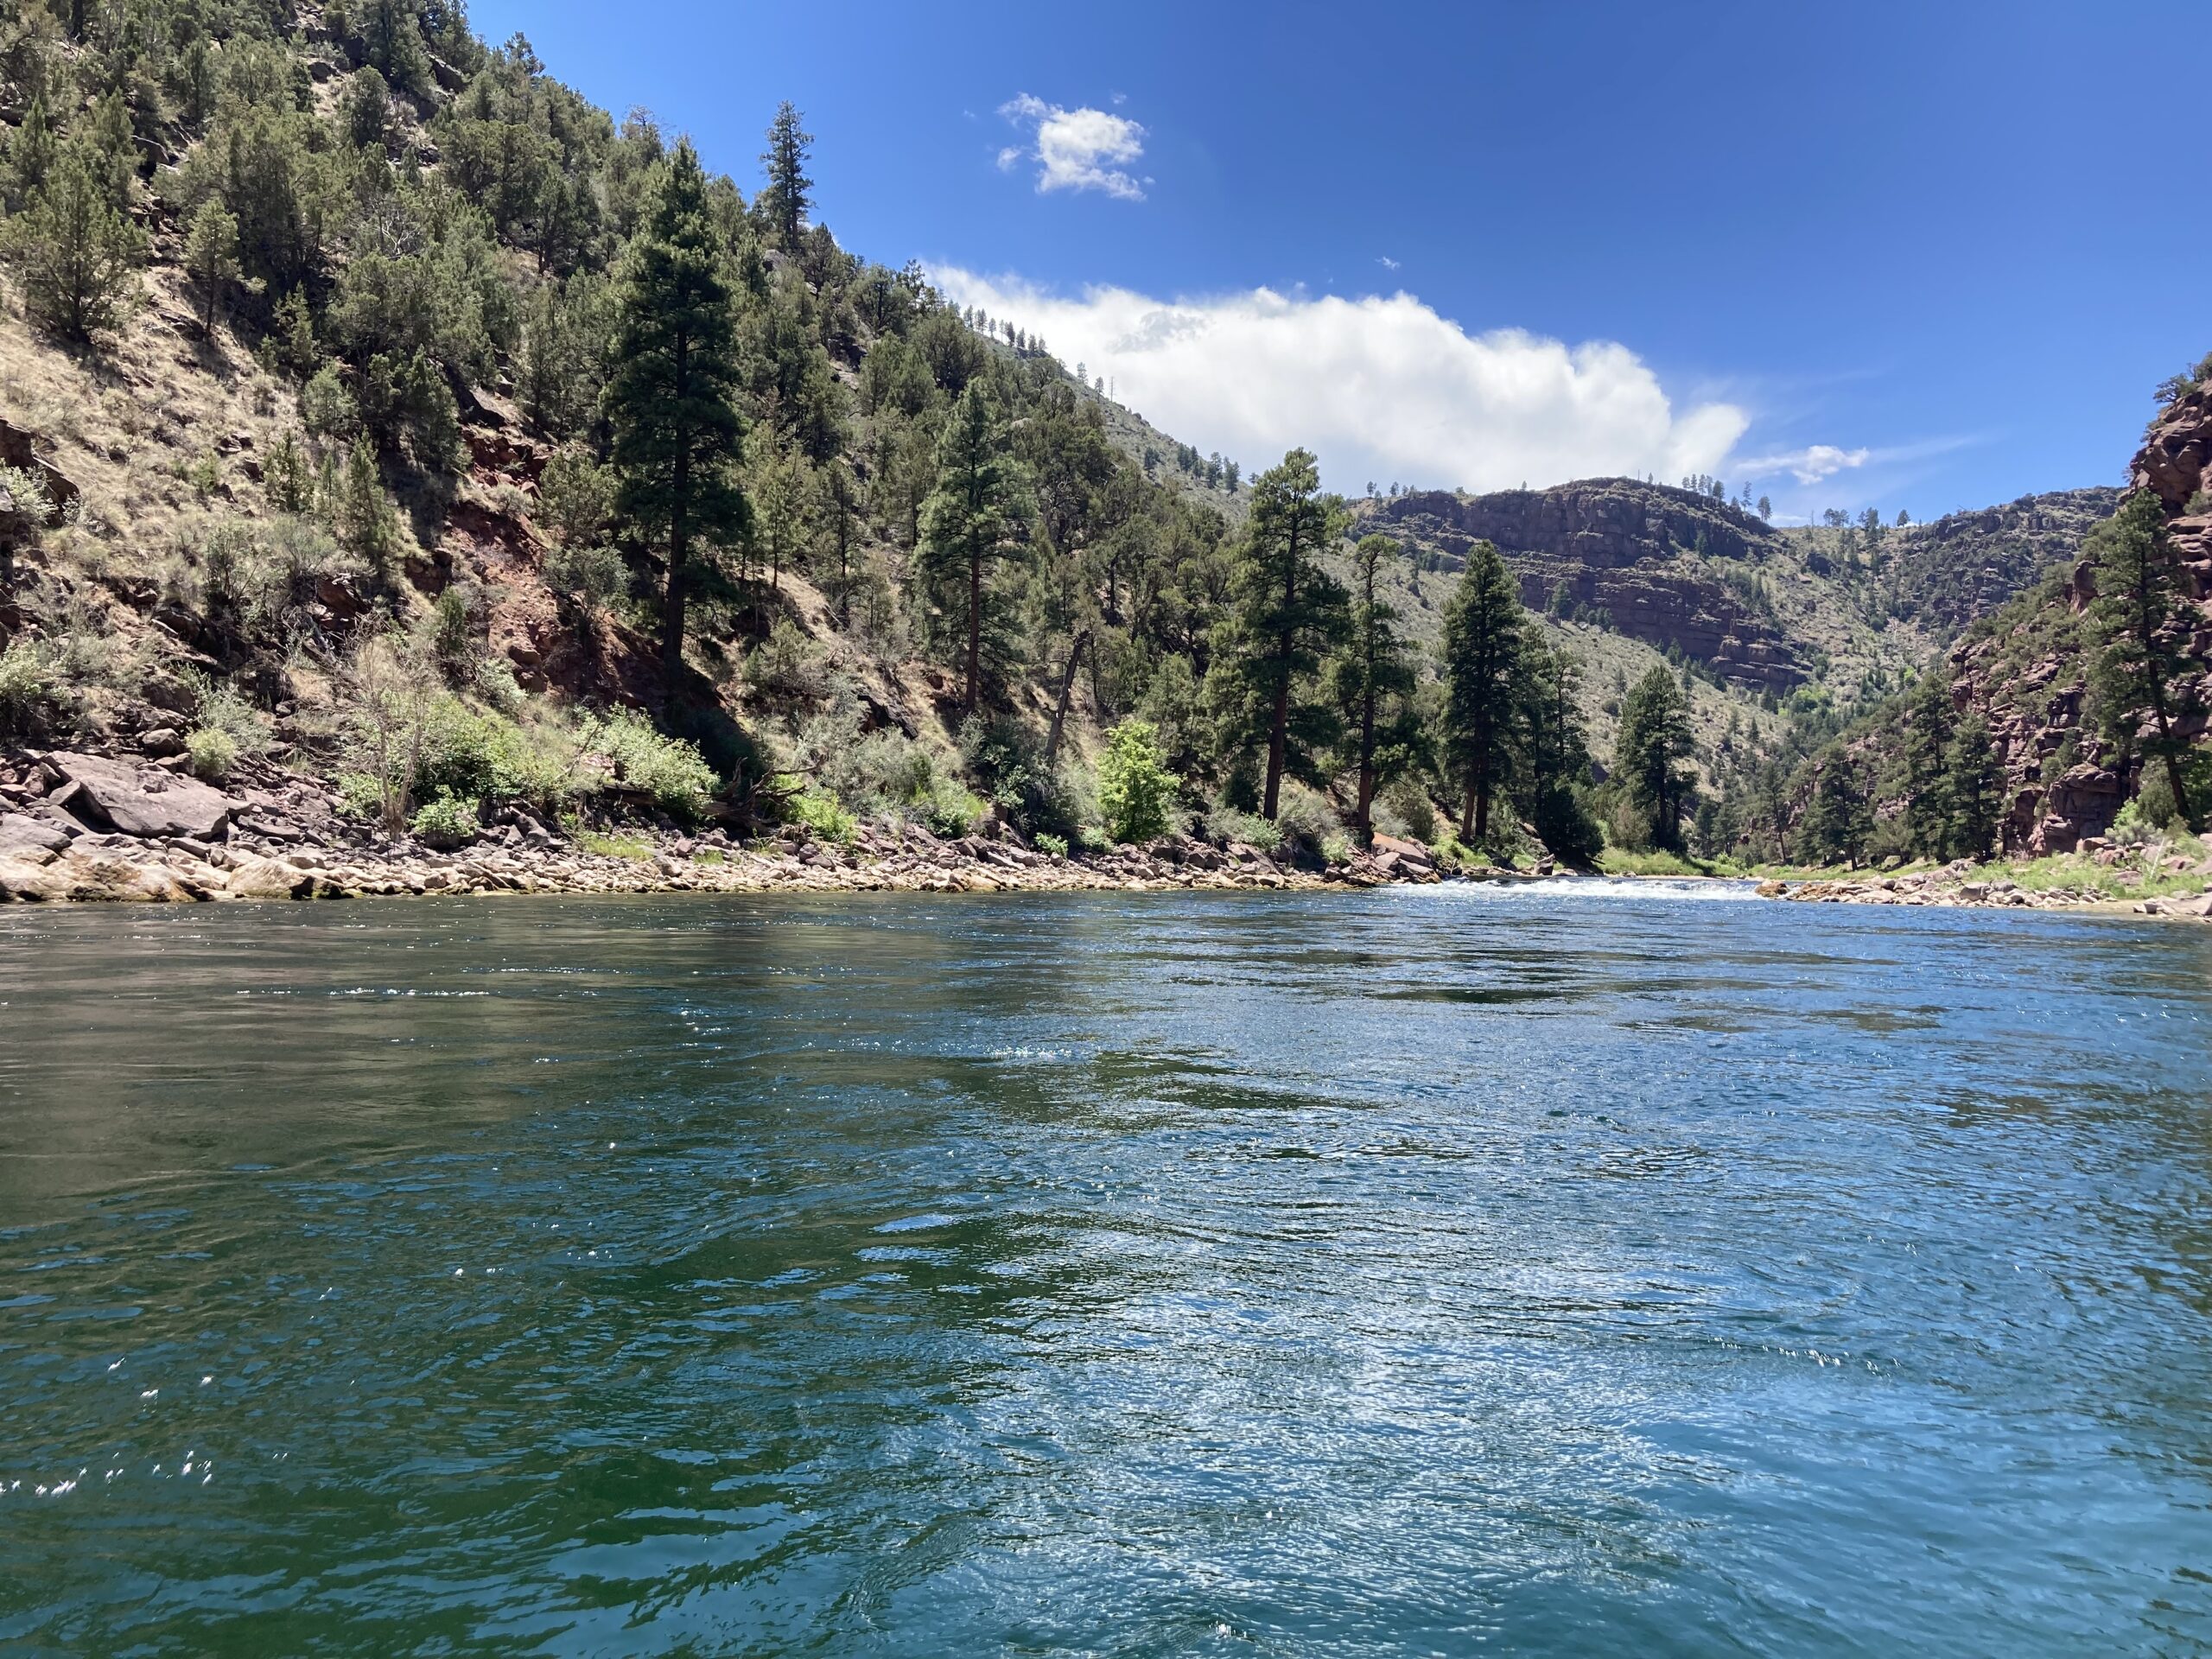 El río Green debajo de la presa Flaming Gorge. Tomada el 4 de julio de 2021. Crédito a Lisa Winters, Grand Canyon Trust.